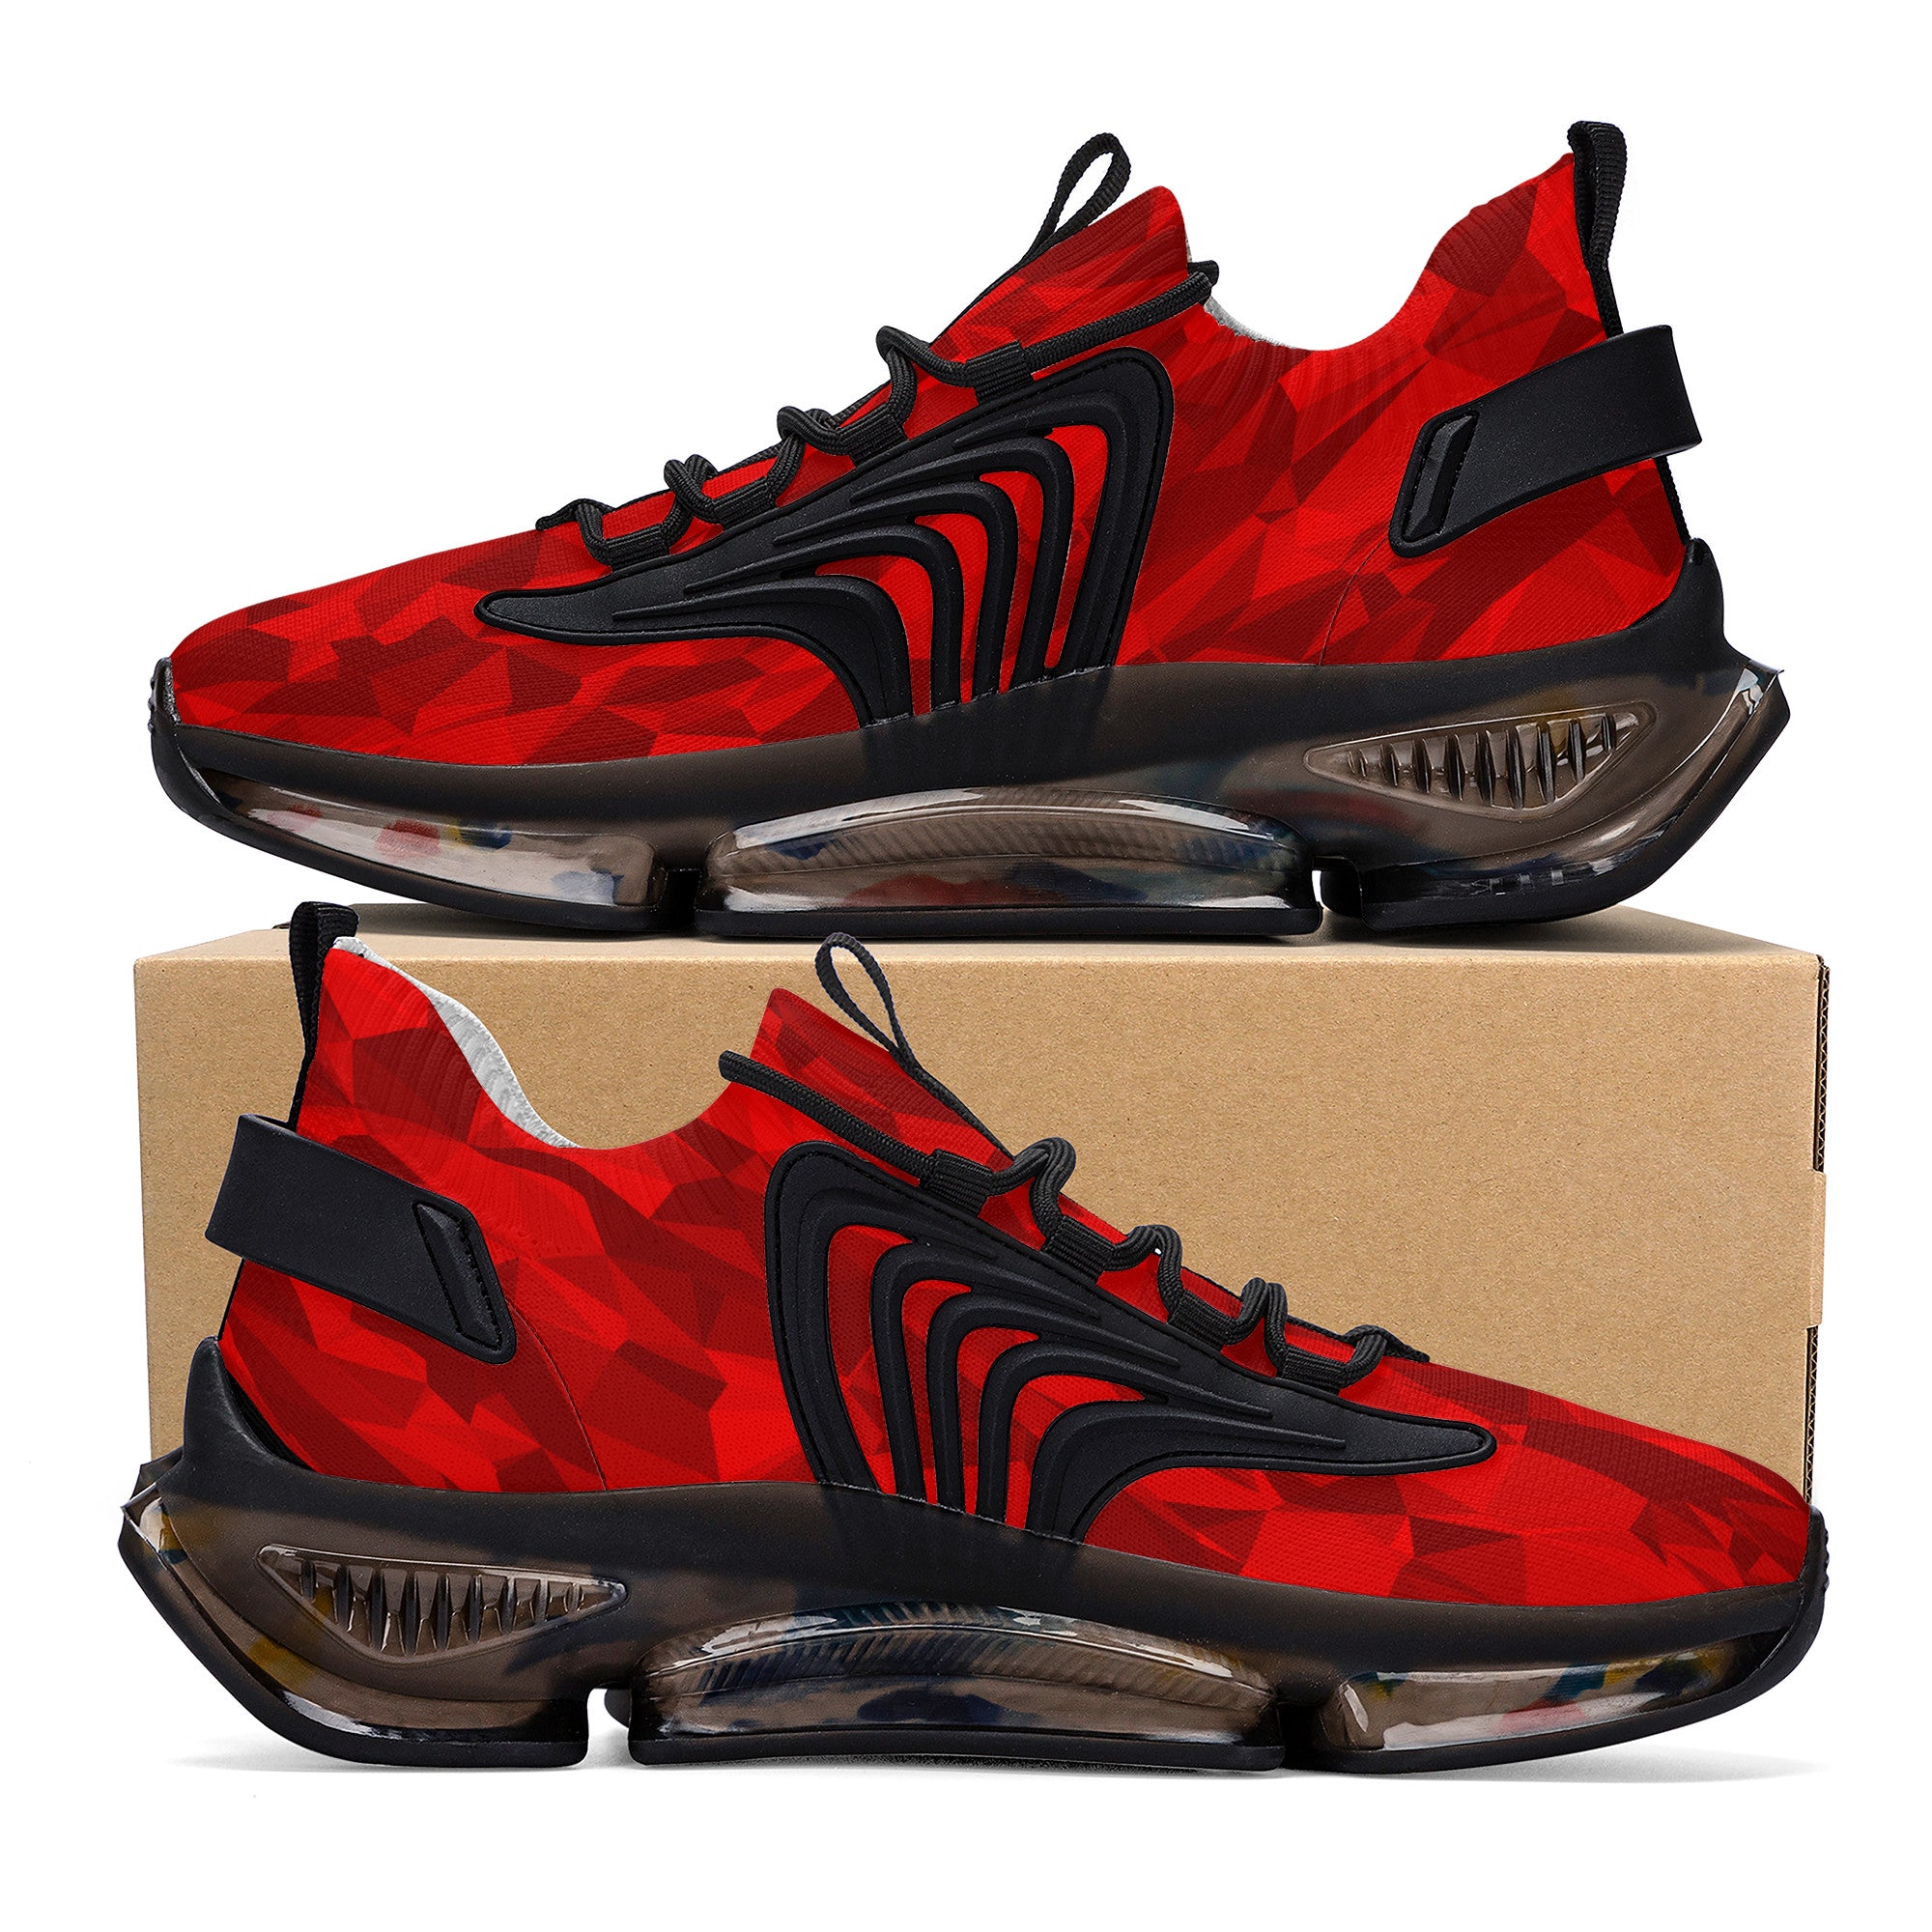 Custom Hebrew Israelite Red Digital Camo Reaction Athletic Sneakers - Black